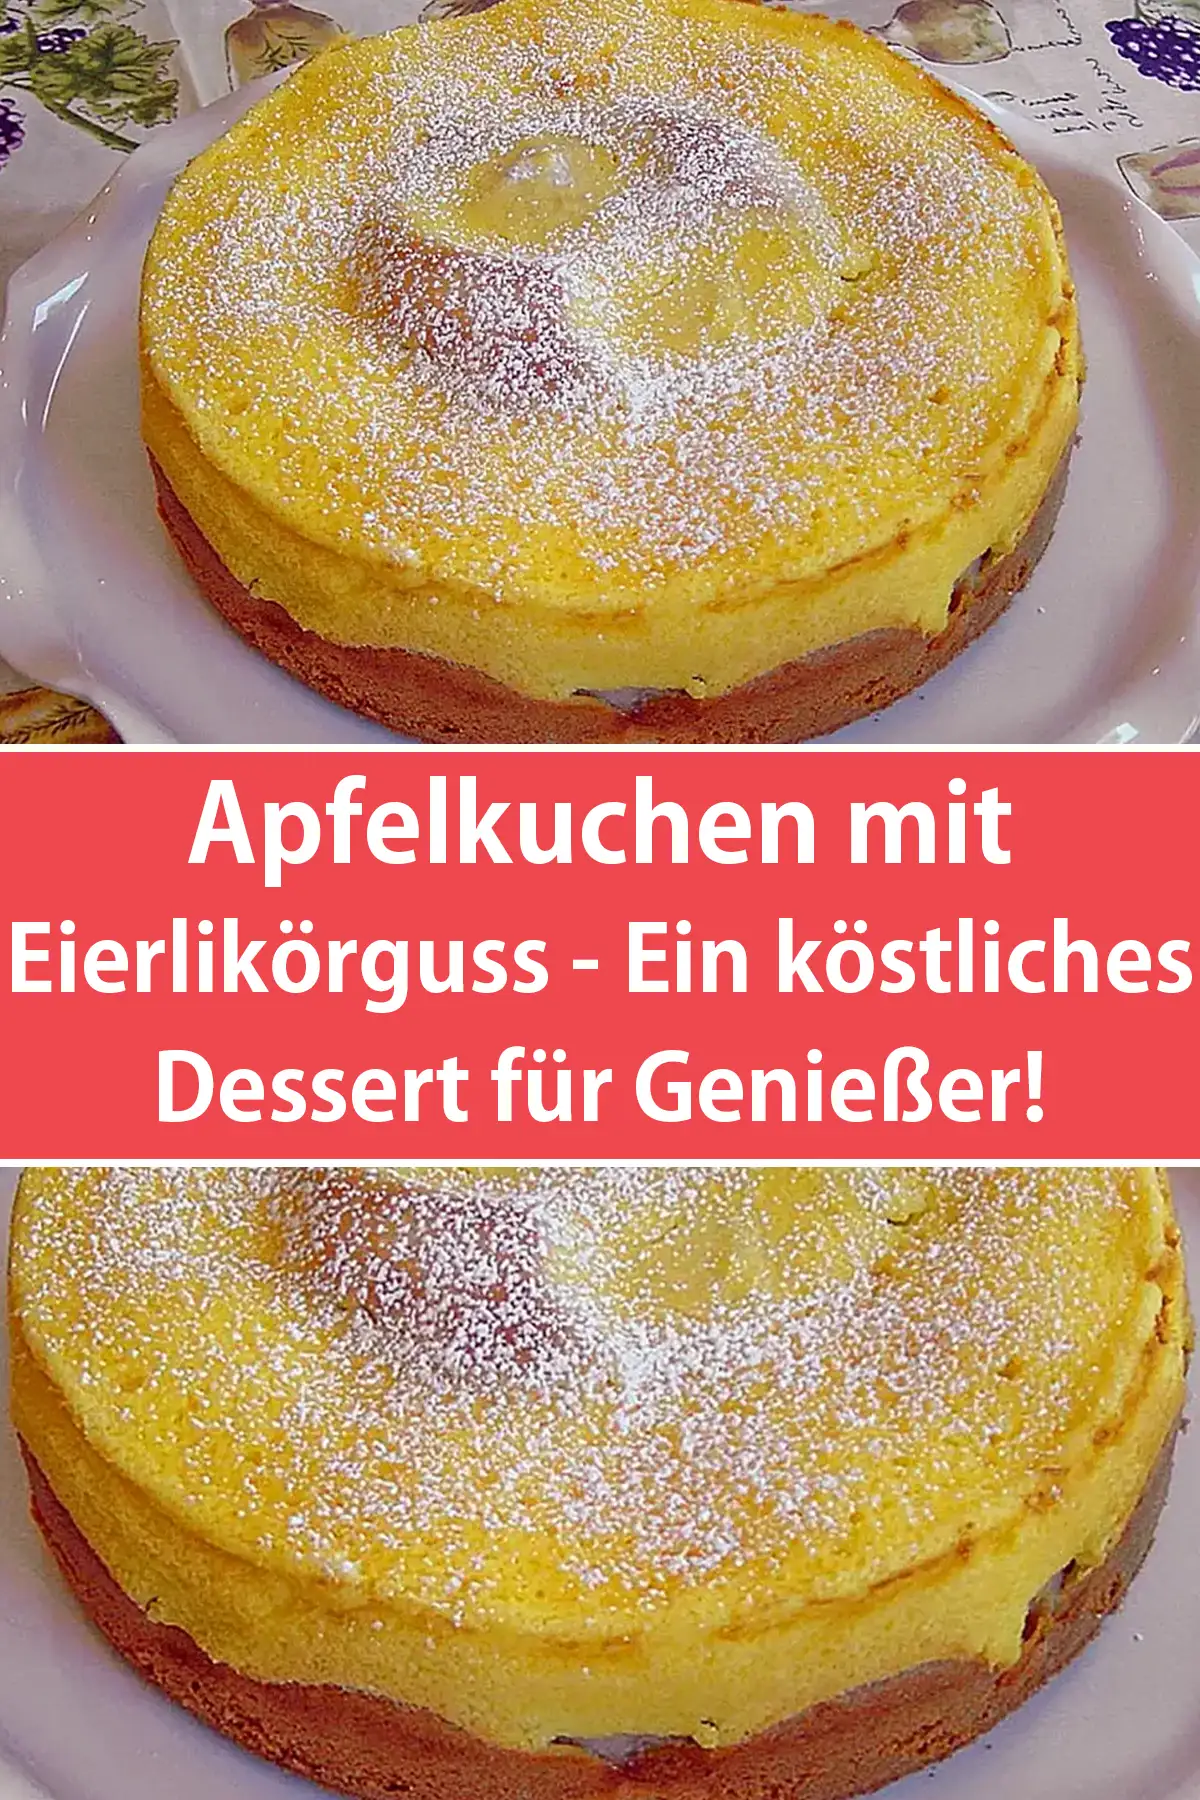 Apfelkuchen mit Eierlikörguss - Ein köstliches Dessert für Genießer!